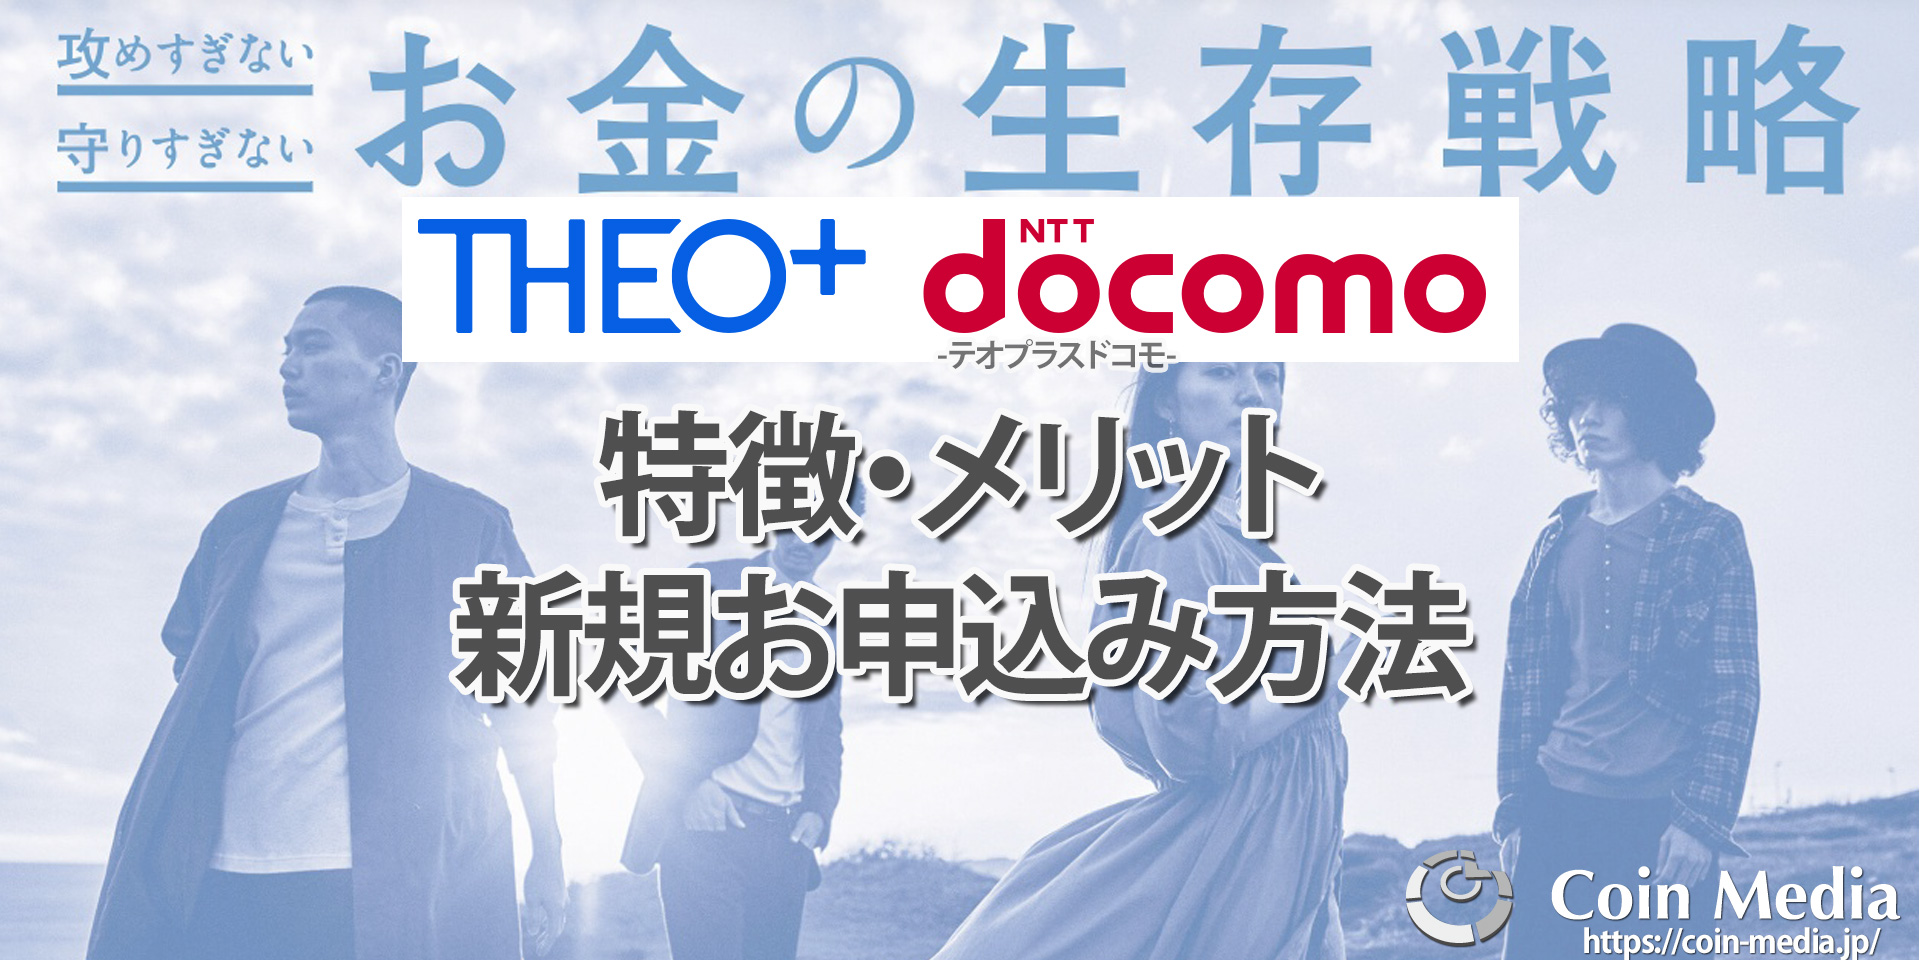 THEO+docomo（テオプラスドコモ）とは？特徴やメリット、新規お申込み方法などを解説！